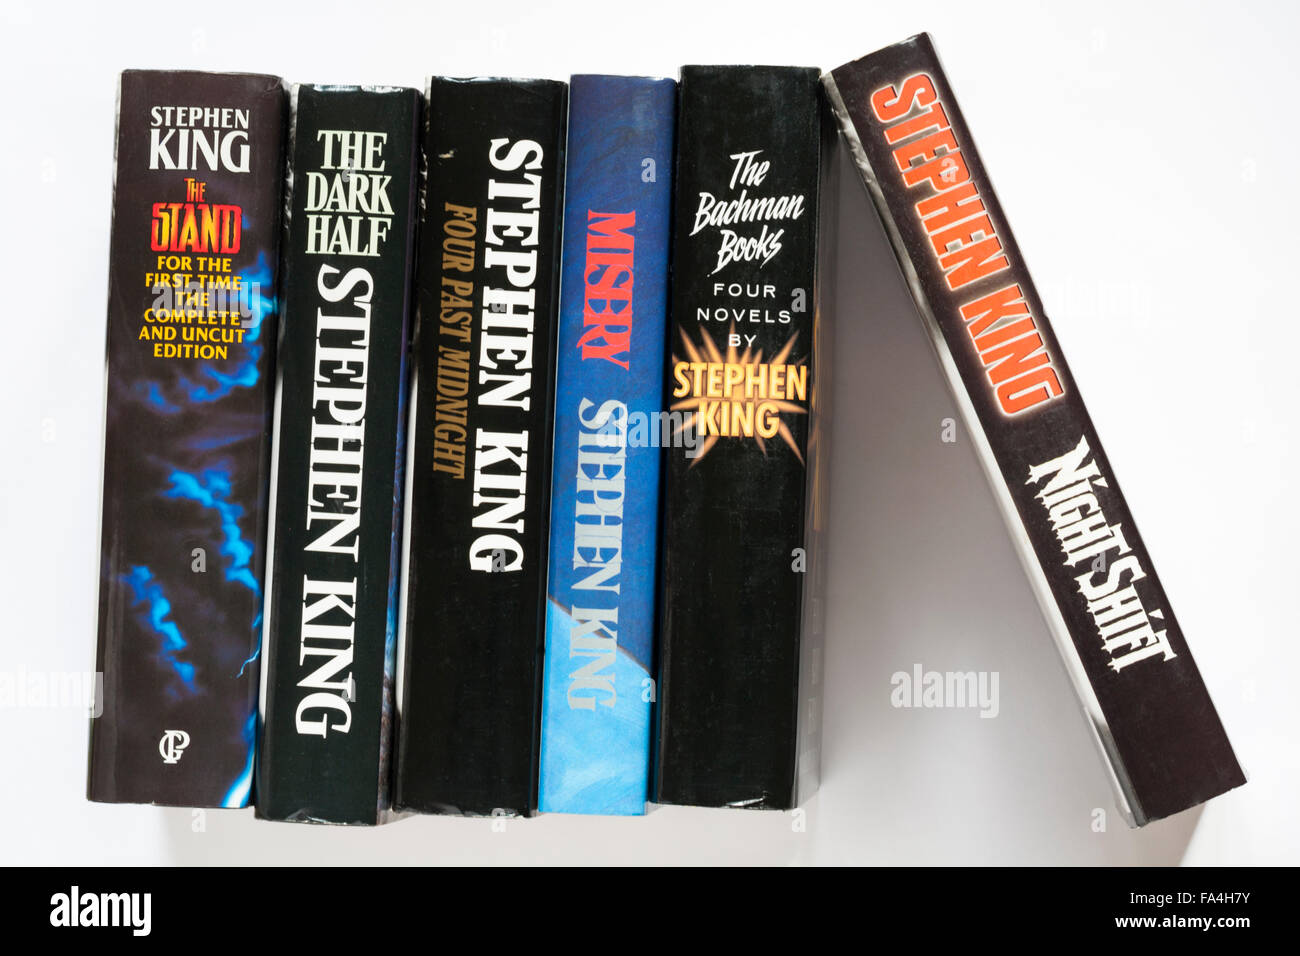 Reihe von Stephen King Bücher einschließlich Vier nach Mitternacht, die dunkle Hälfte, den Standplatz, Nachtschicht, Elend und vier Romane von Stephen King auf Weiß Stockfoto